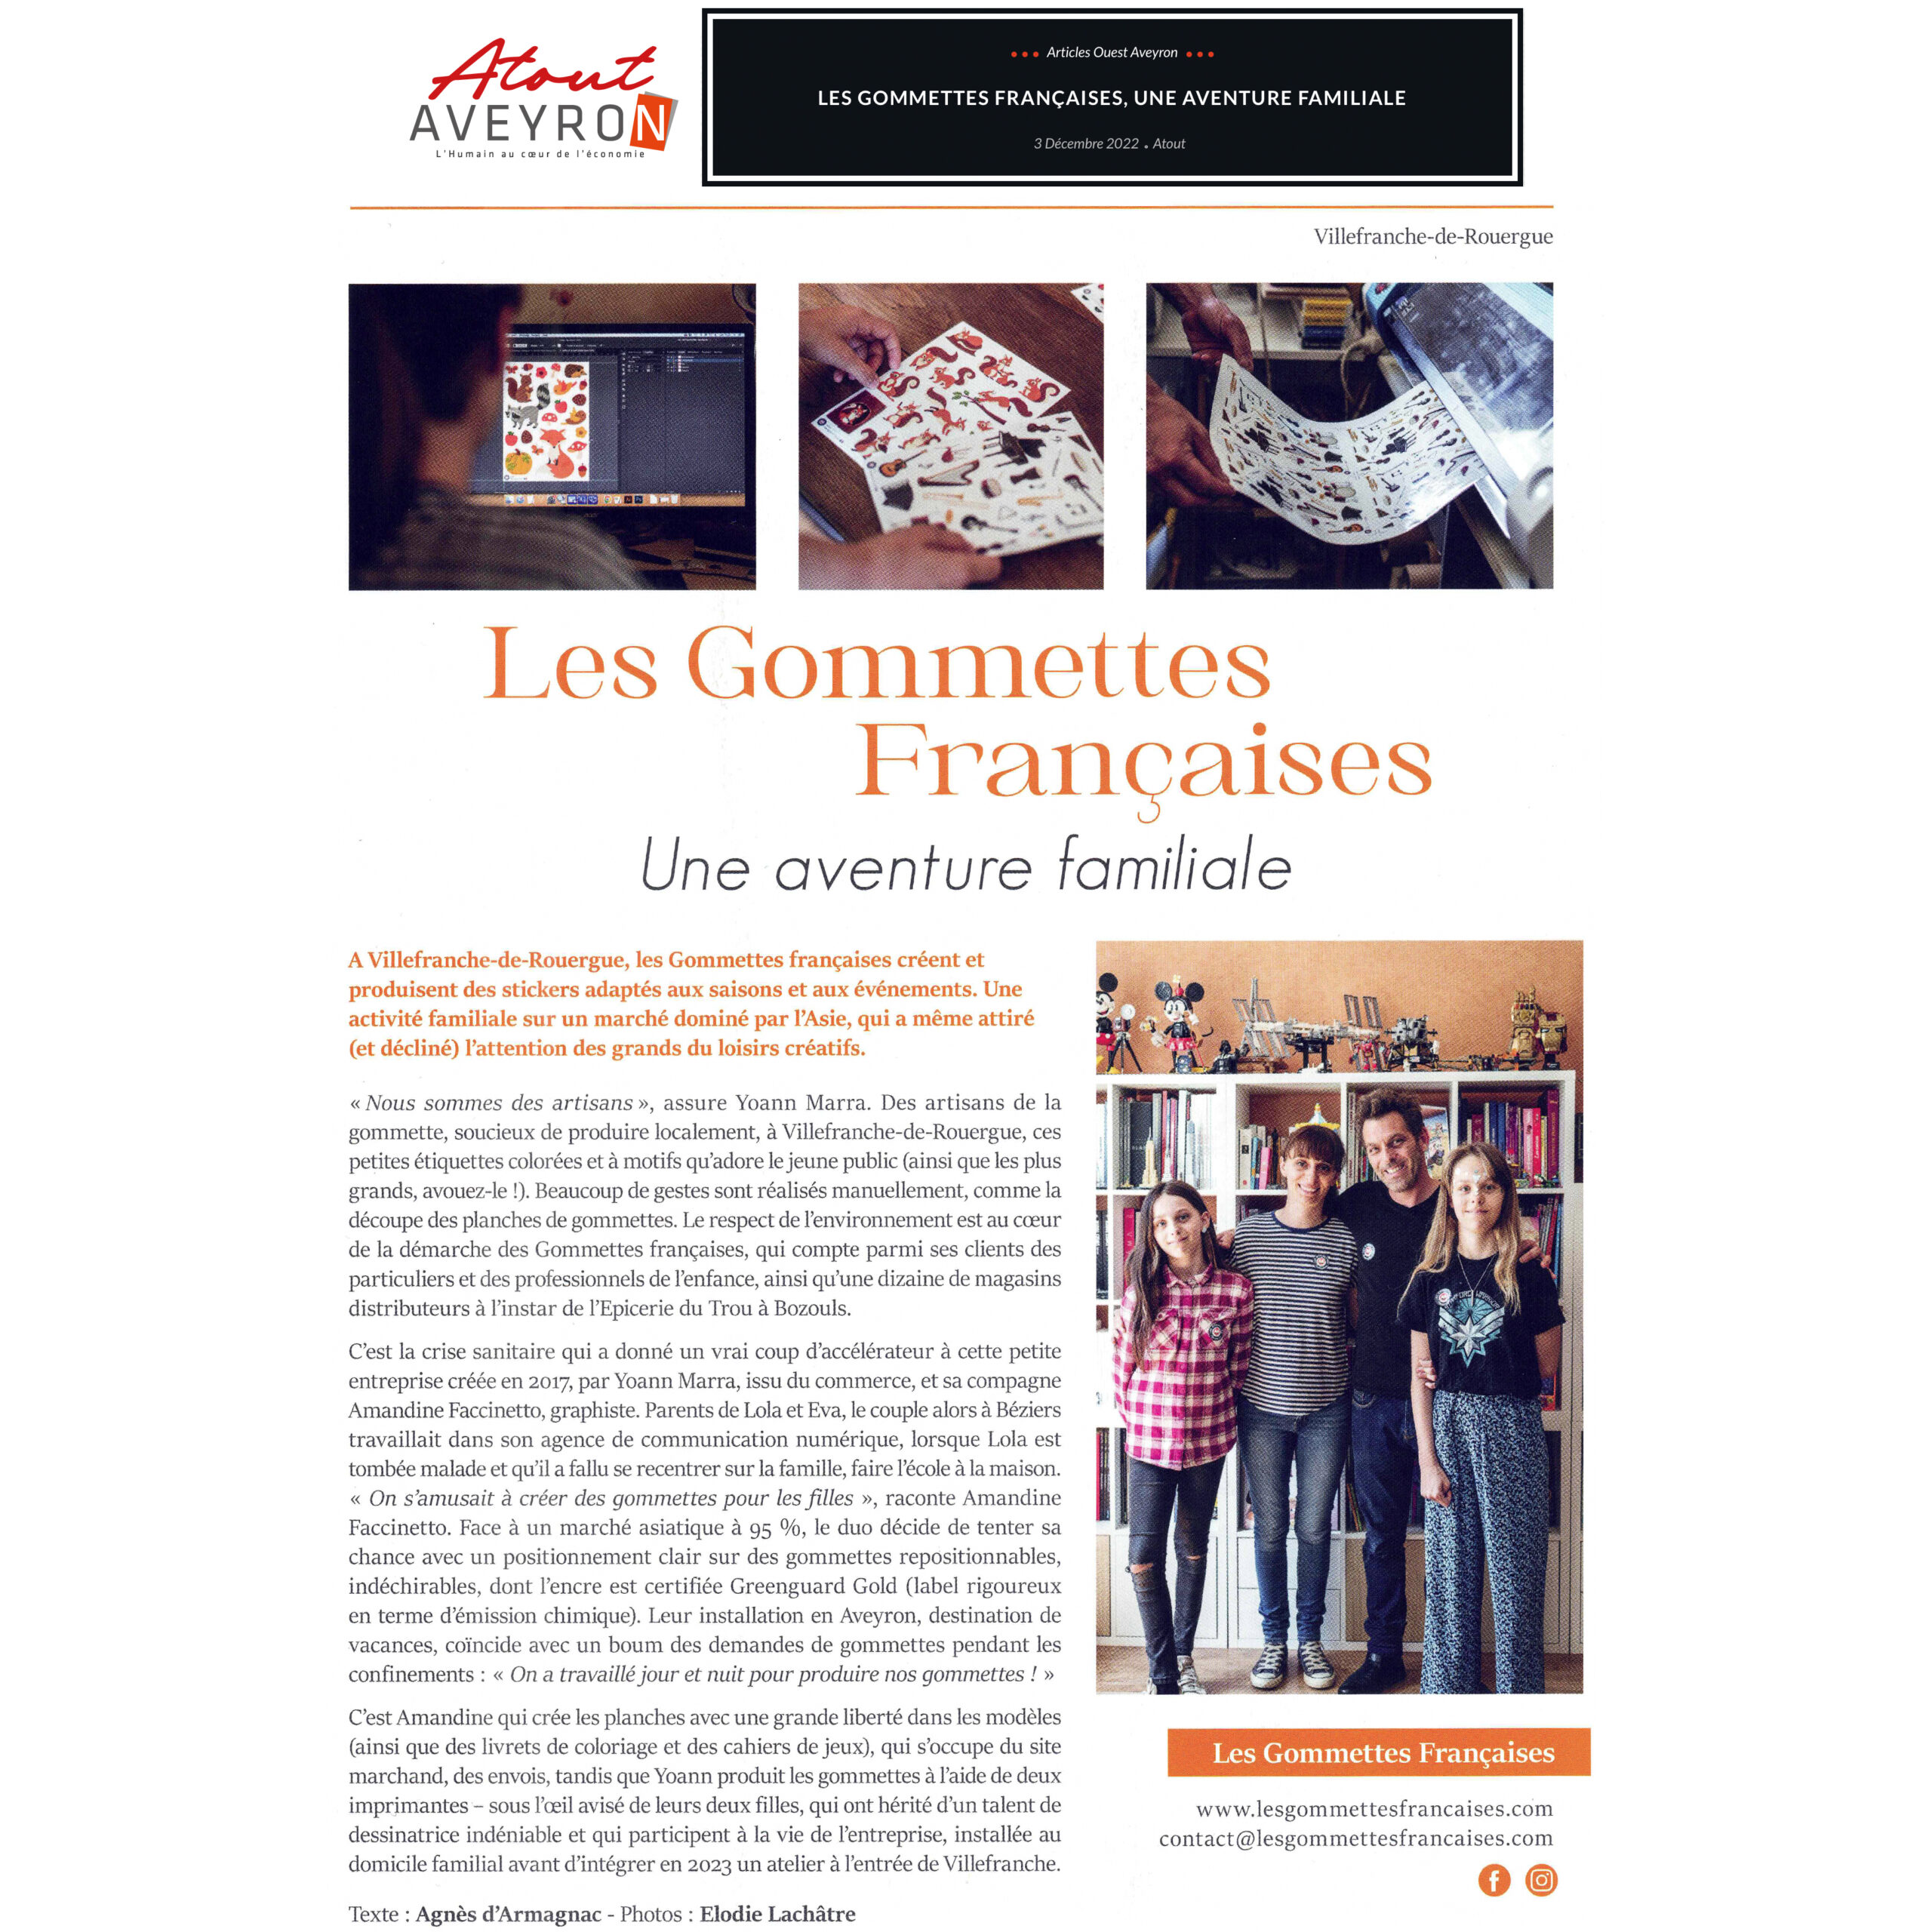 La presse en parle | Les gommettes françaises | Atout Aveyron